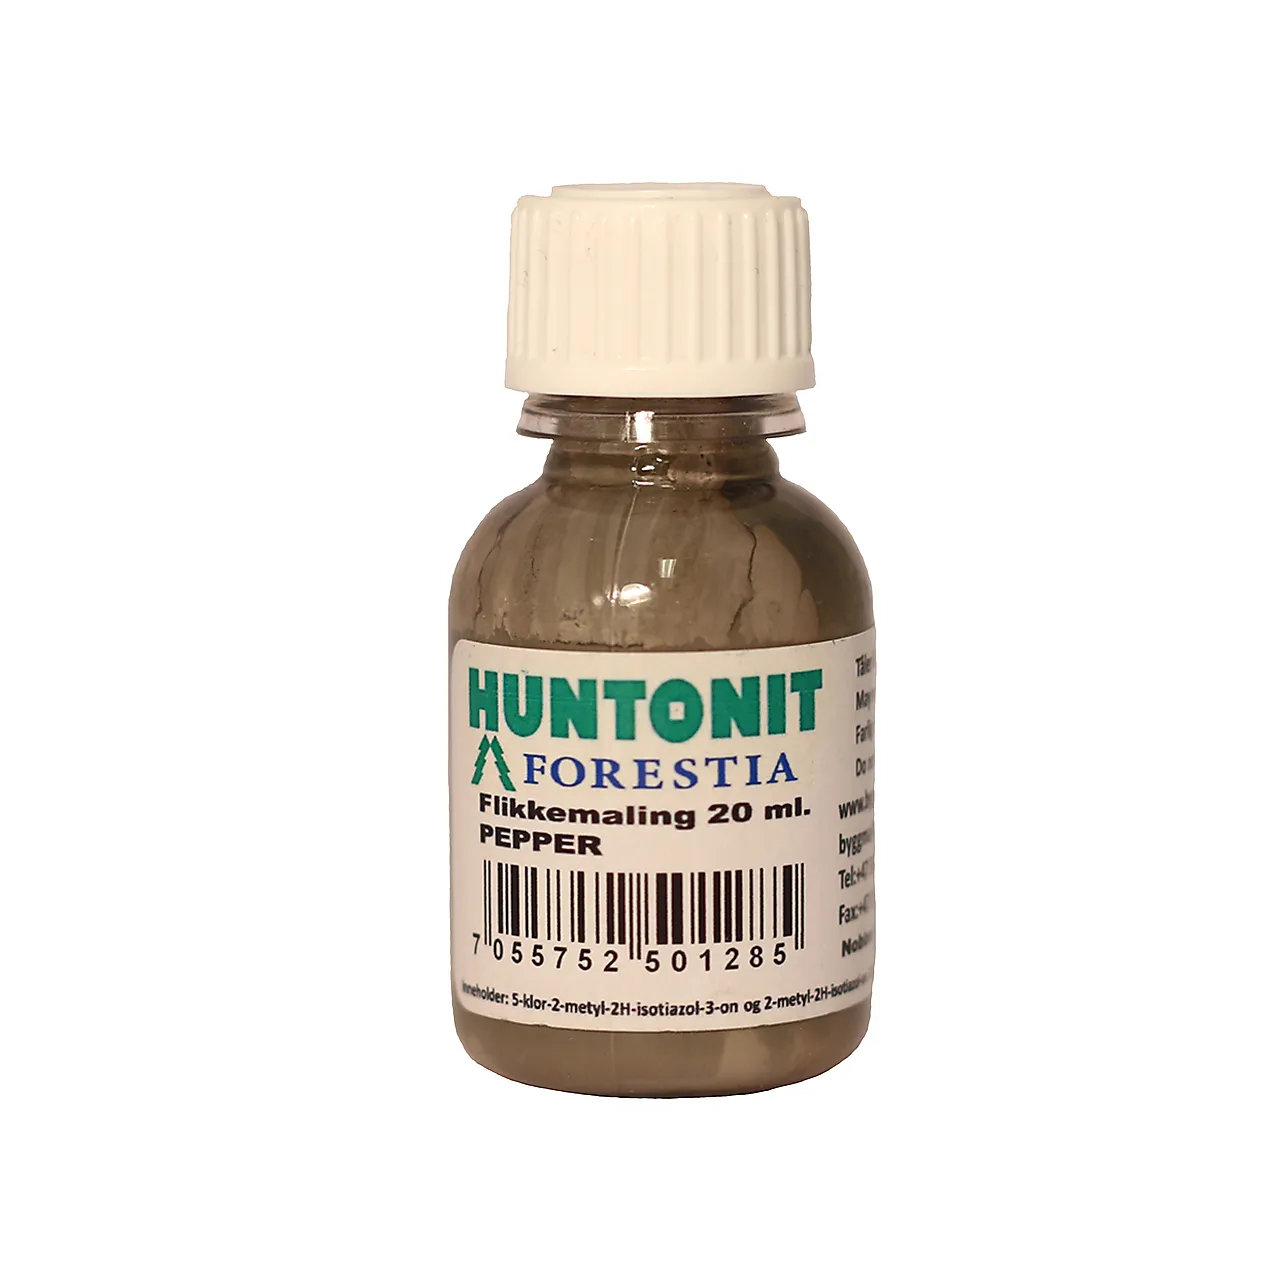 Huntonit flikkemaling pepper 20ml flaske ncs s 6502-r null - null - 2 - Miniatyr